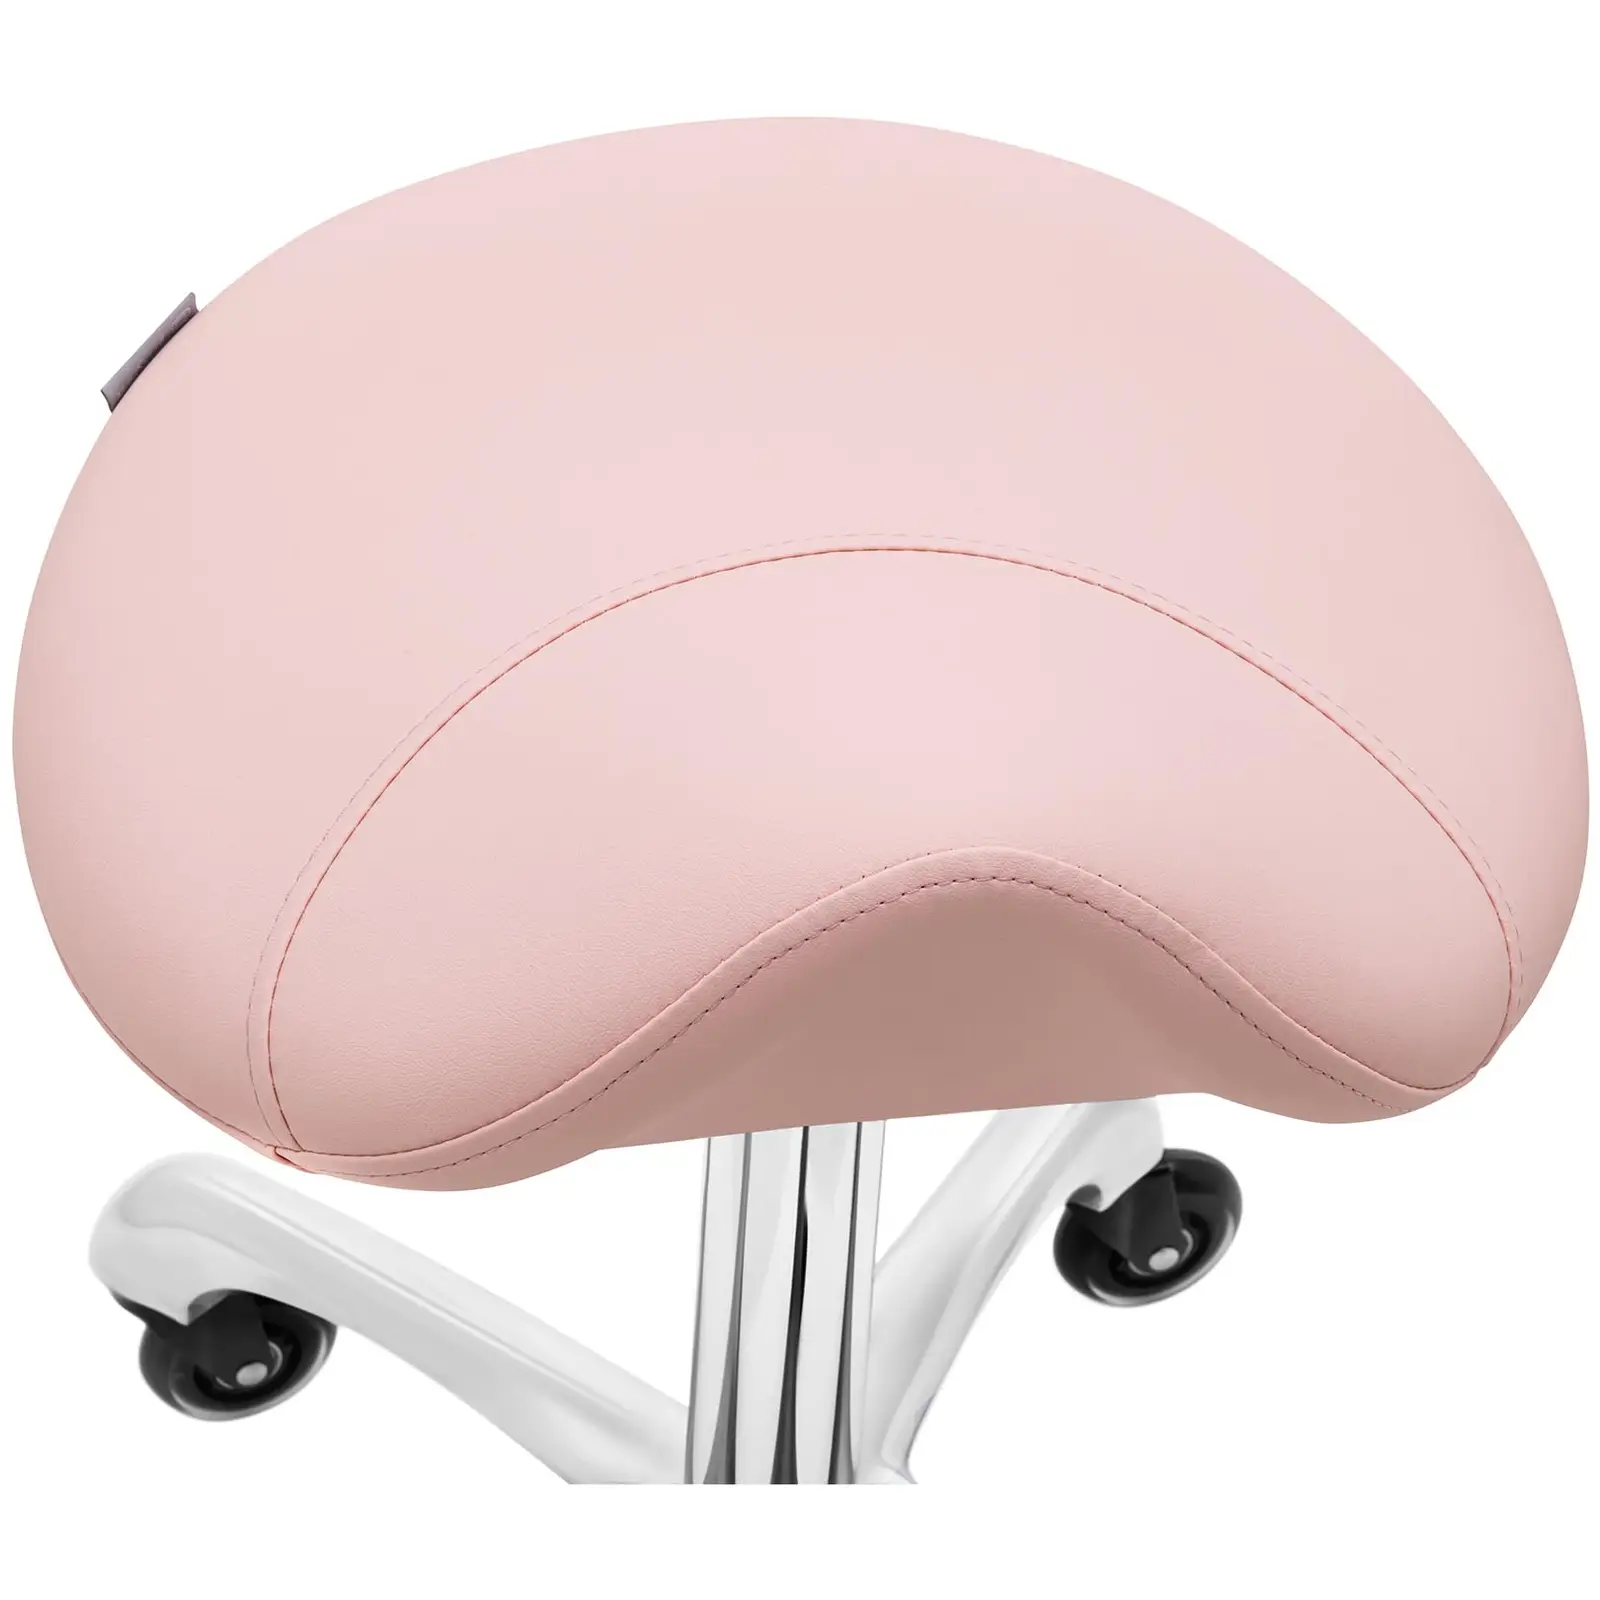 Camilla de estética con taburete para cosmética - rosa, blanco